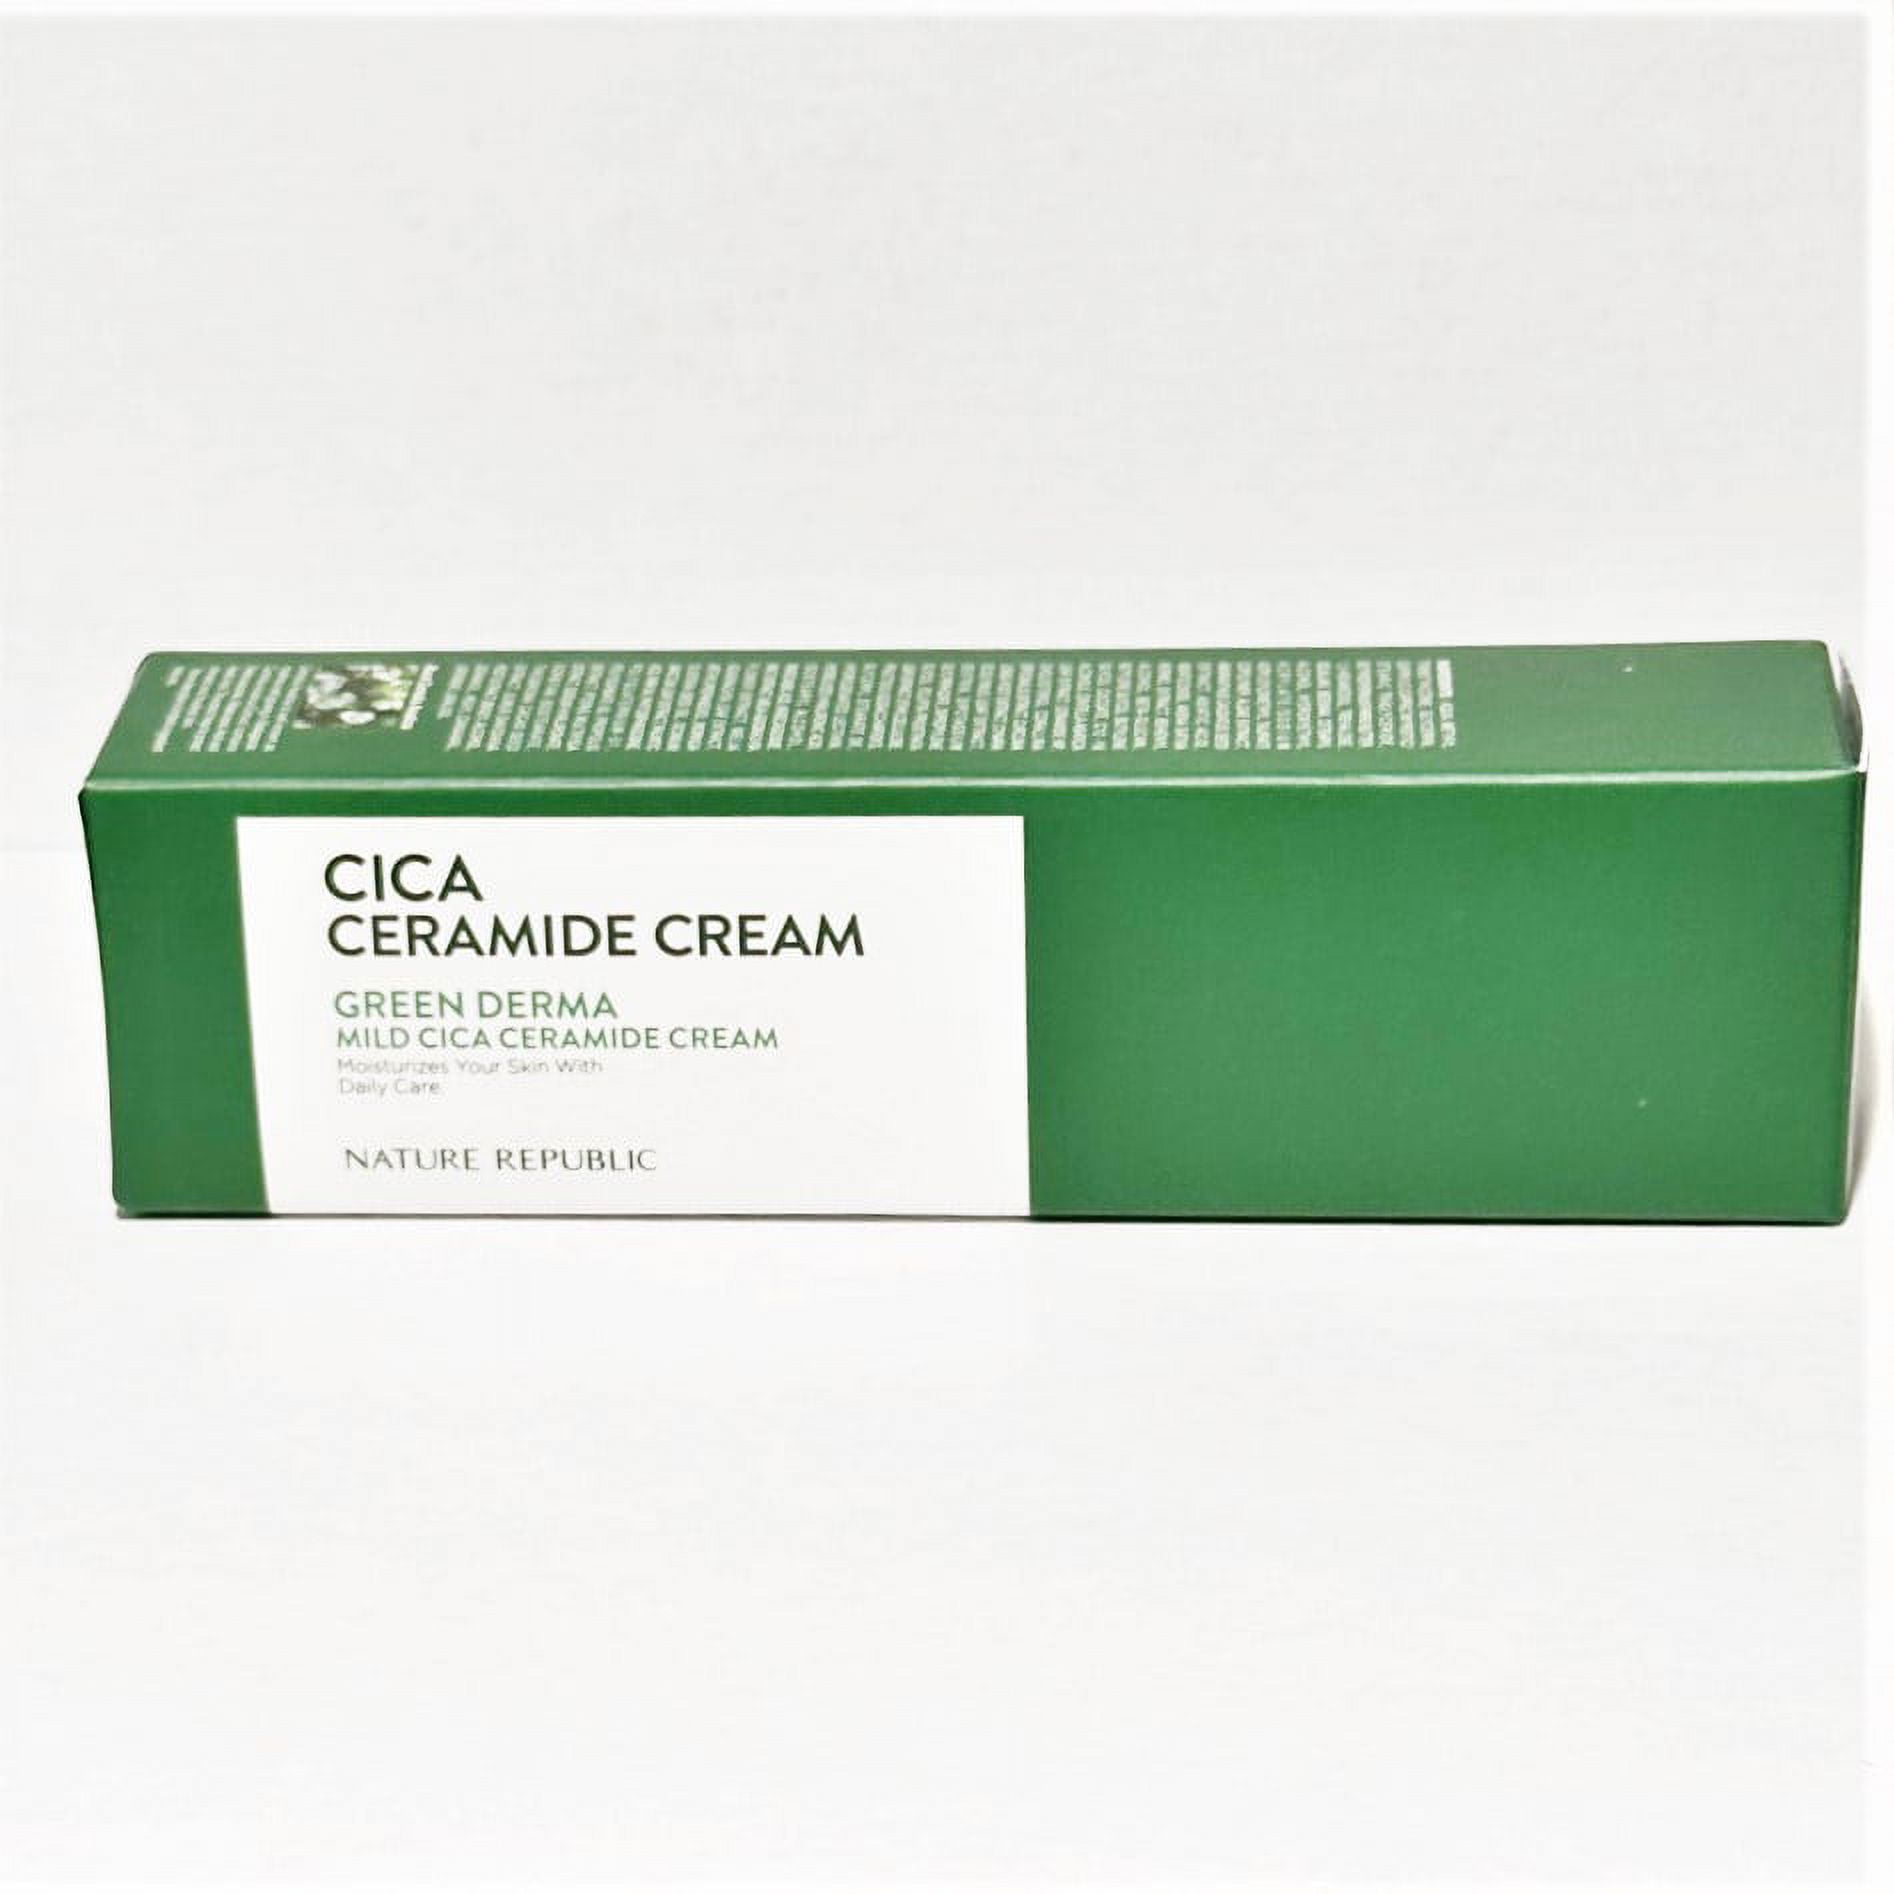 2 Pack Nature Republic Green Derma Mild Cica Ceramide Cream 50ml US Seller  RARE